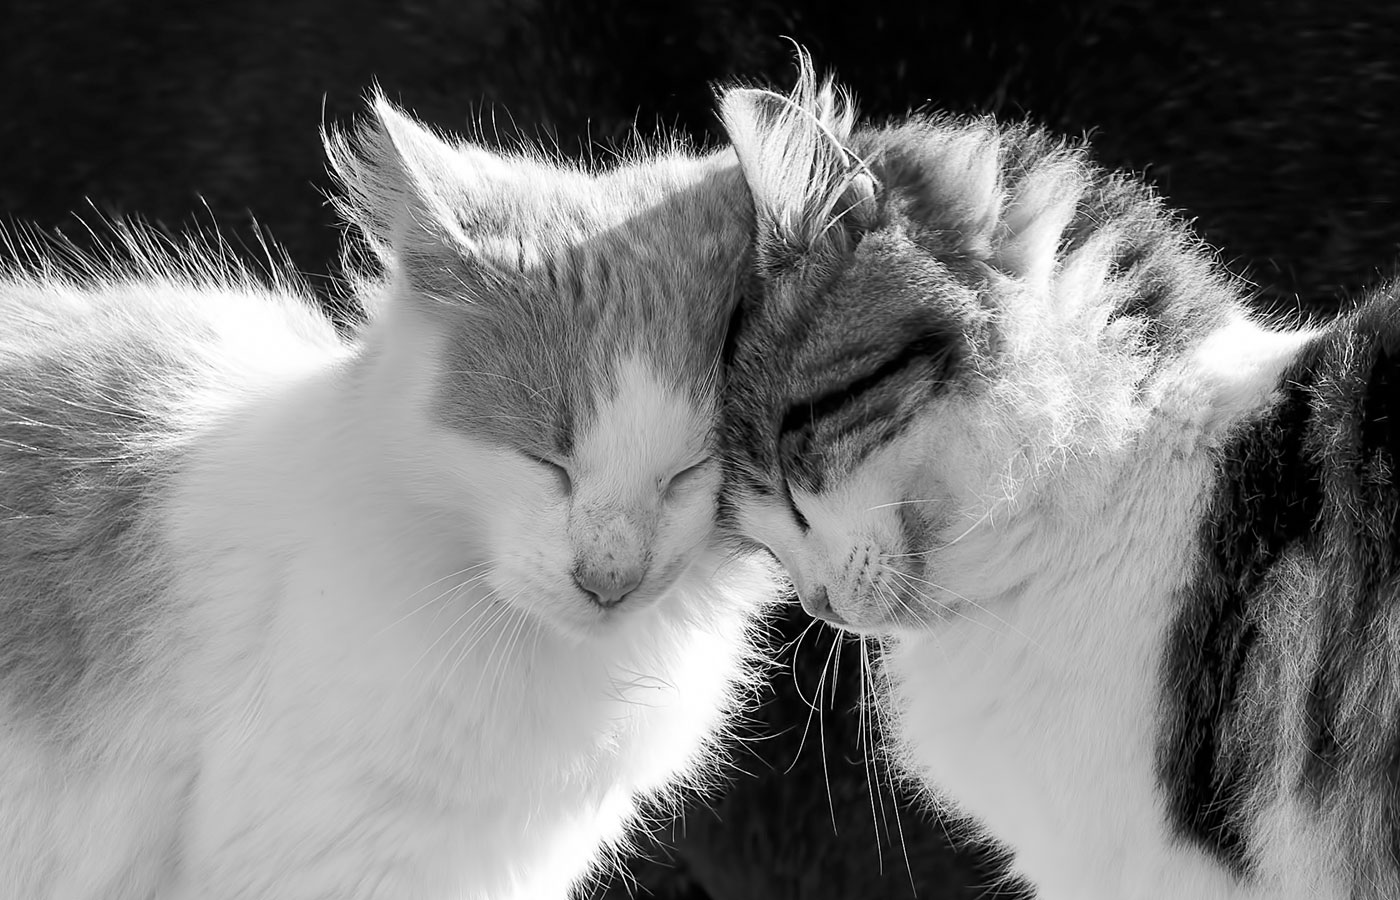 Tender kitties in black and white